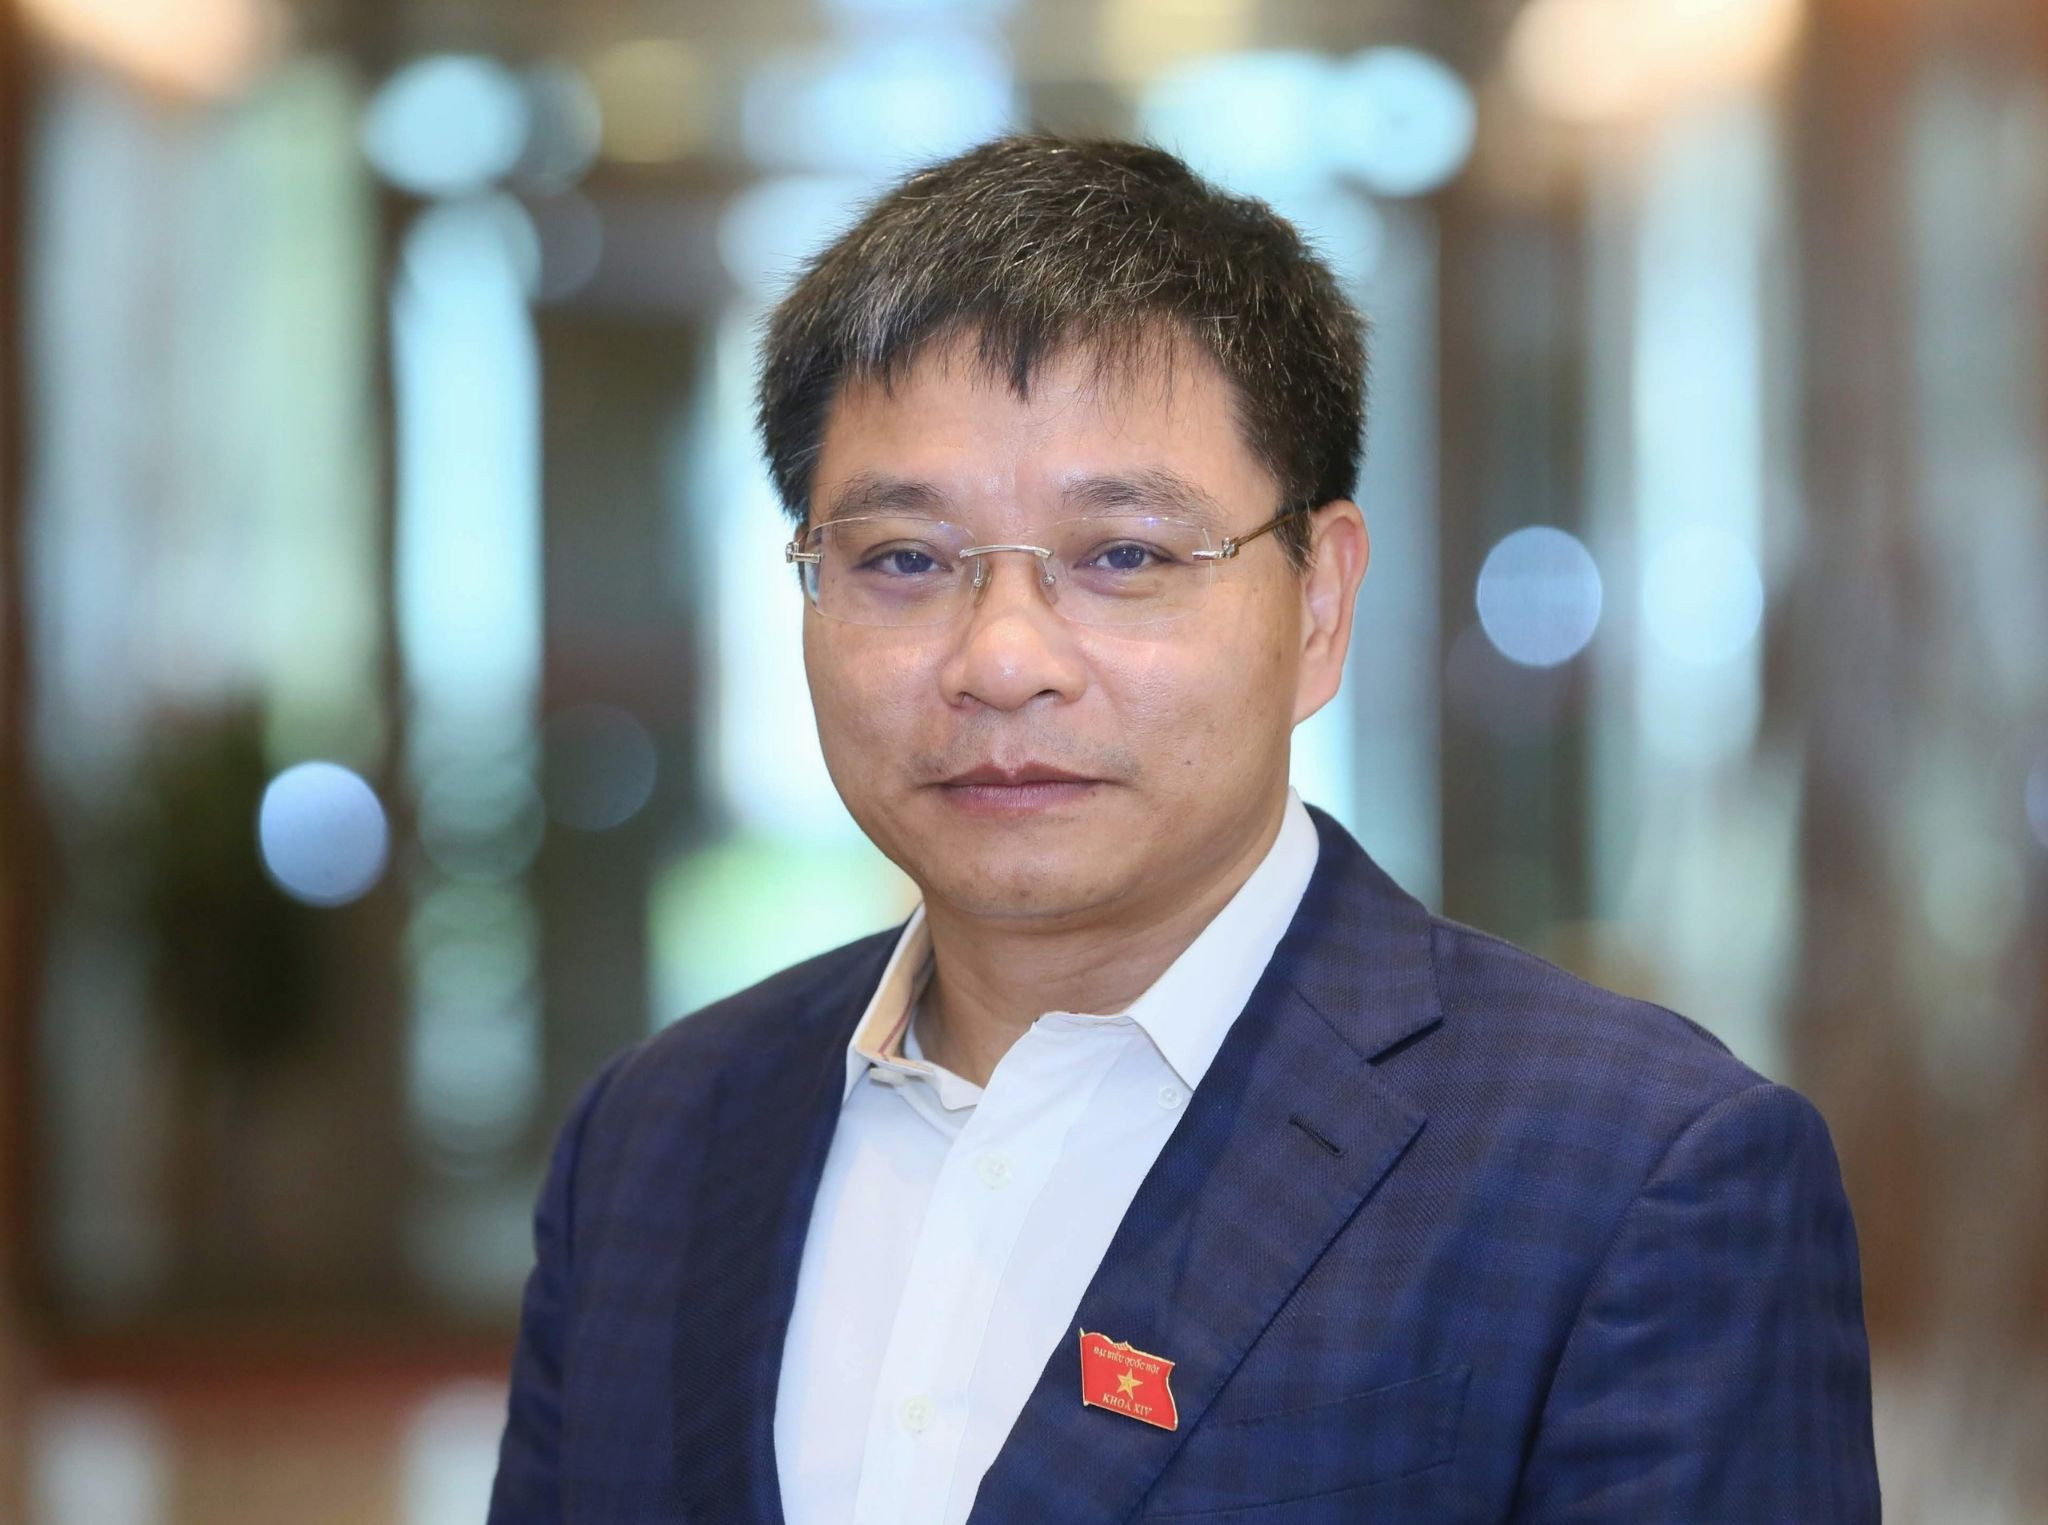 Chân dung tân Bộ trưởng Bộ GTVT Nguyễn Văn Thắng